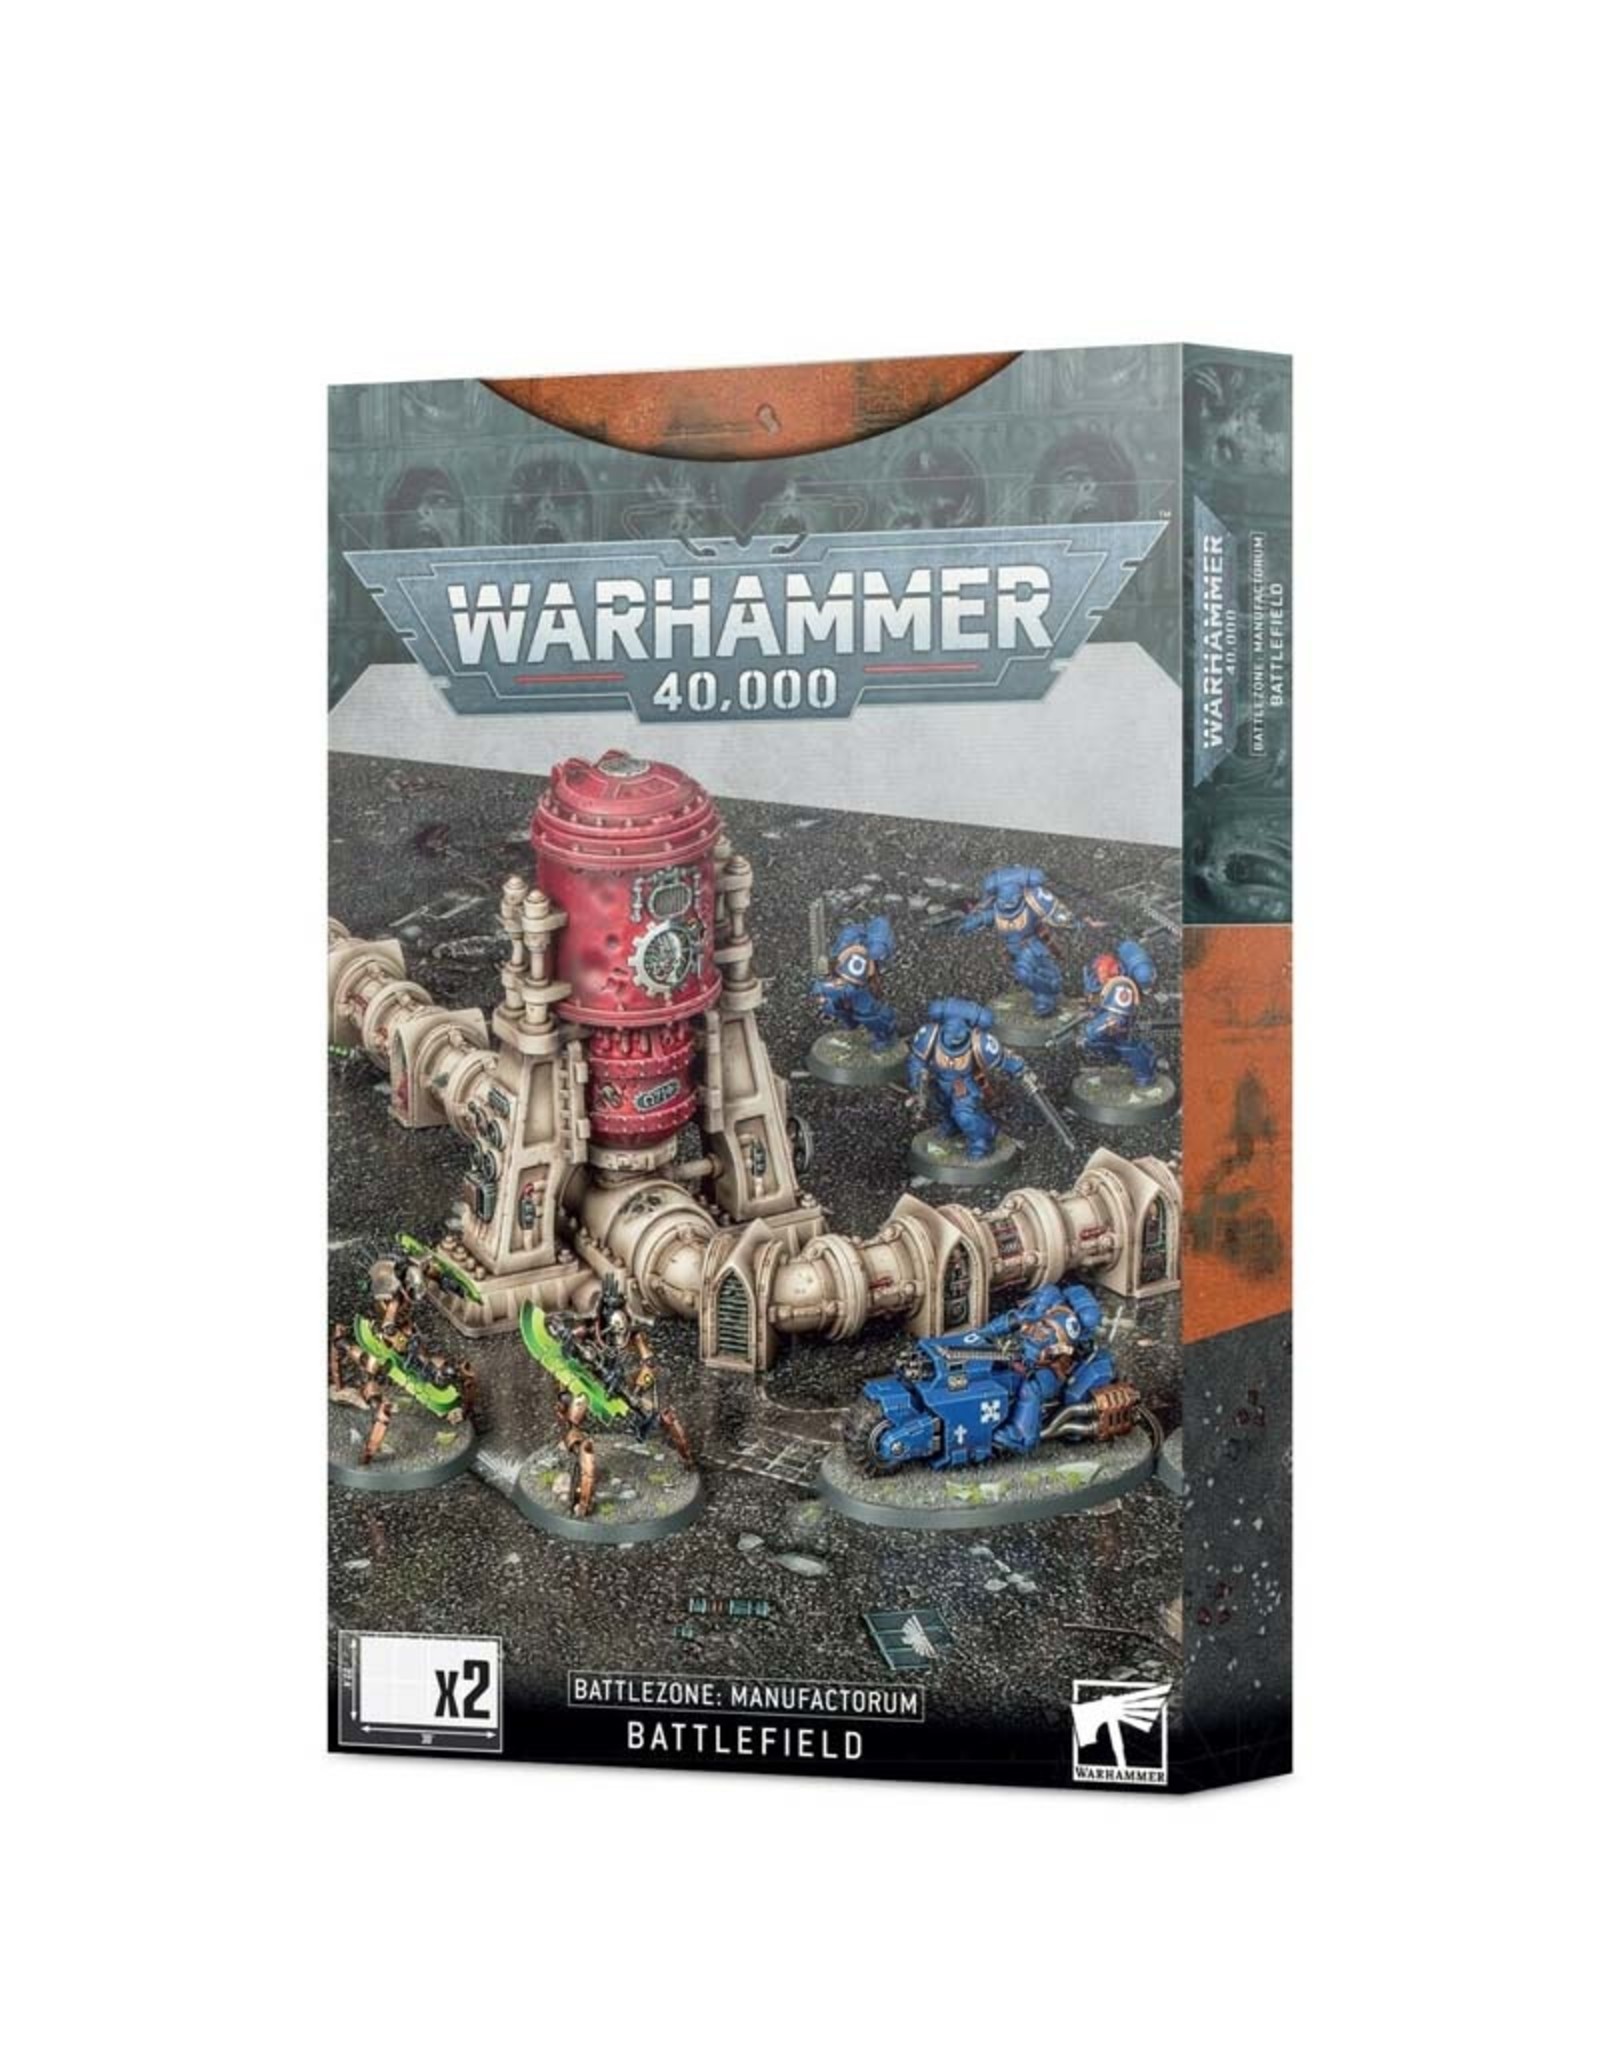 Games Workshop Warhammer 40,000: Battlezone Manufactorum Battlefield